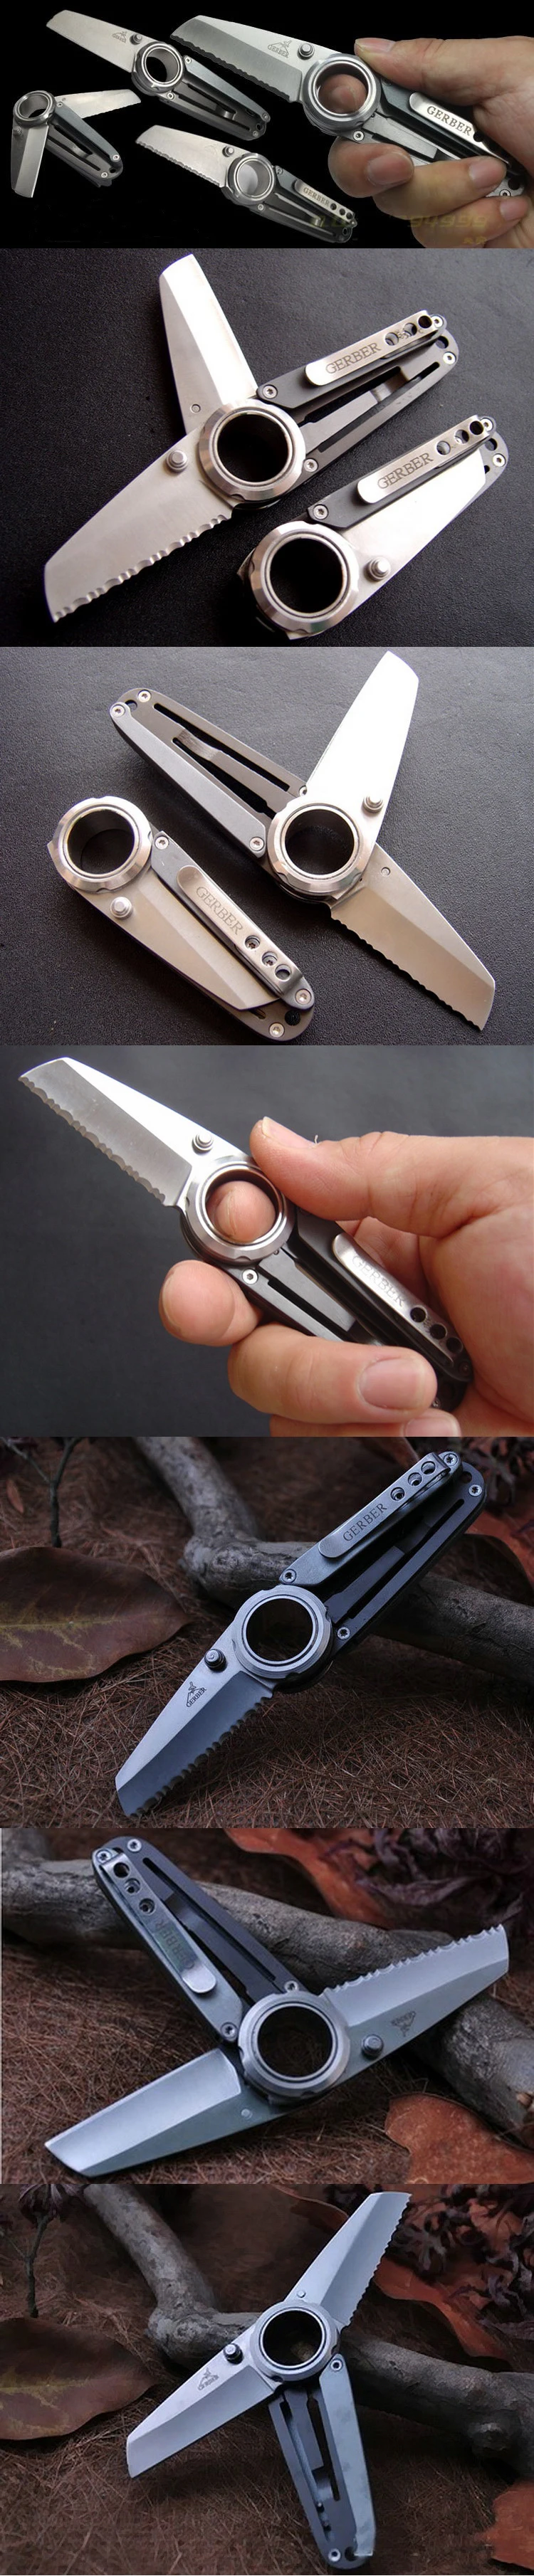 Открытый двойной открытый нож складной пилообразный дикий выживания кемпинг охота портативный Seiko карманный многофункциональный инструмент EDC